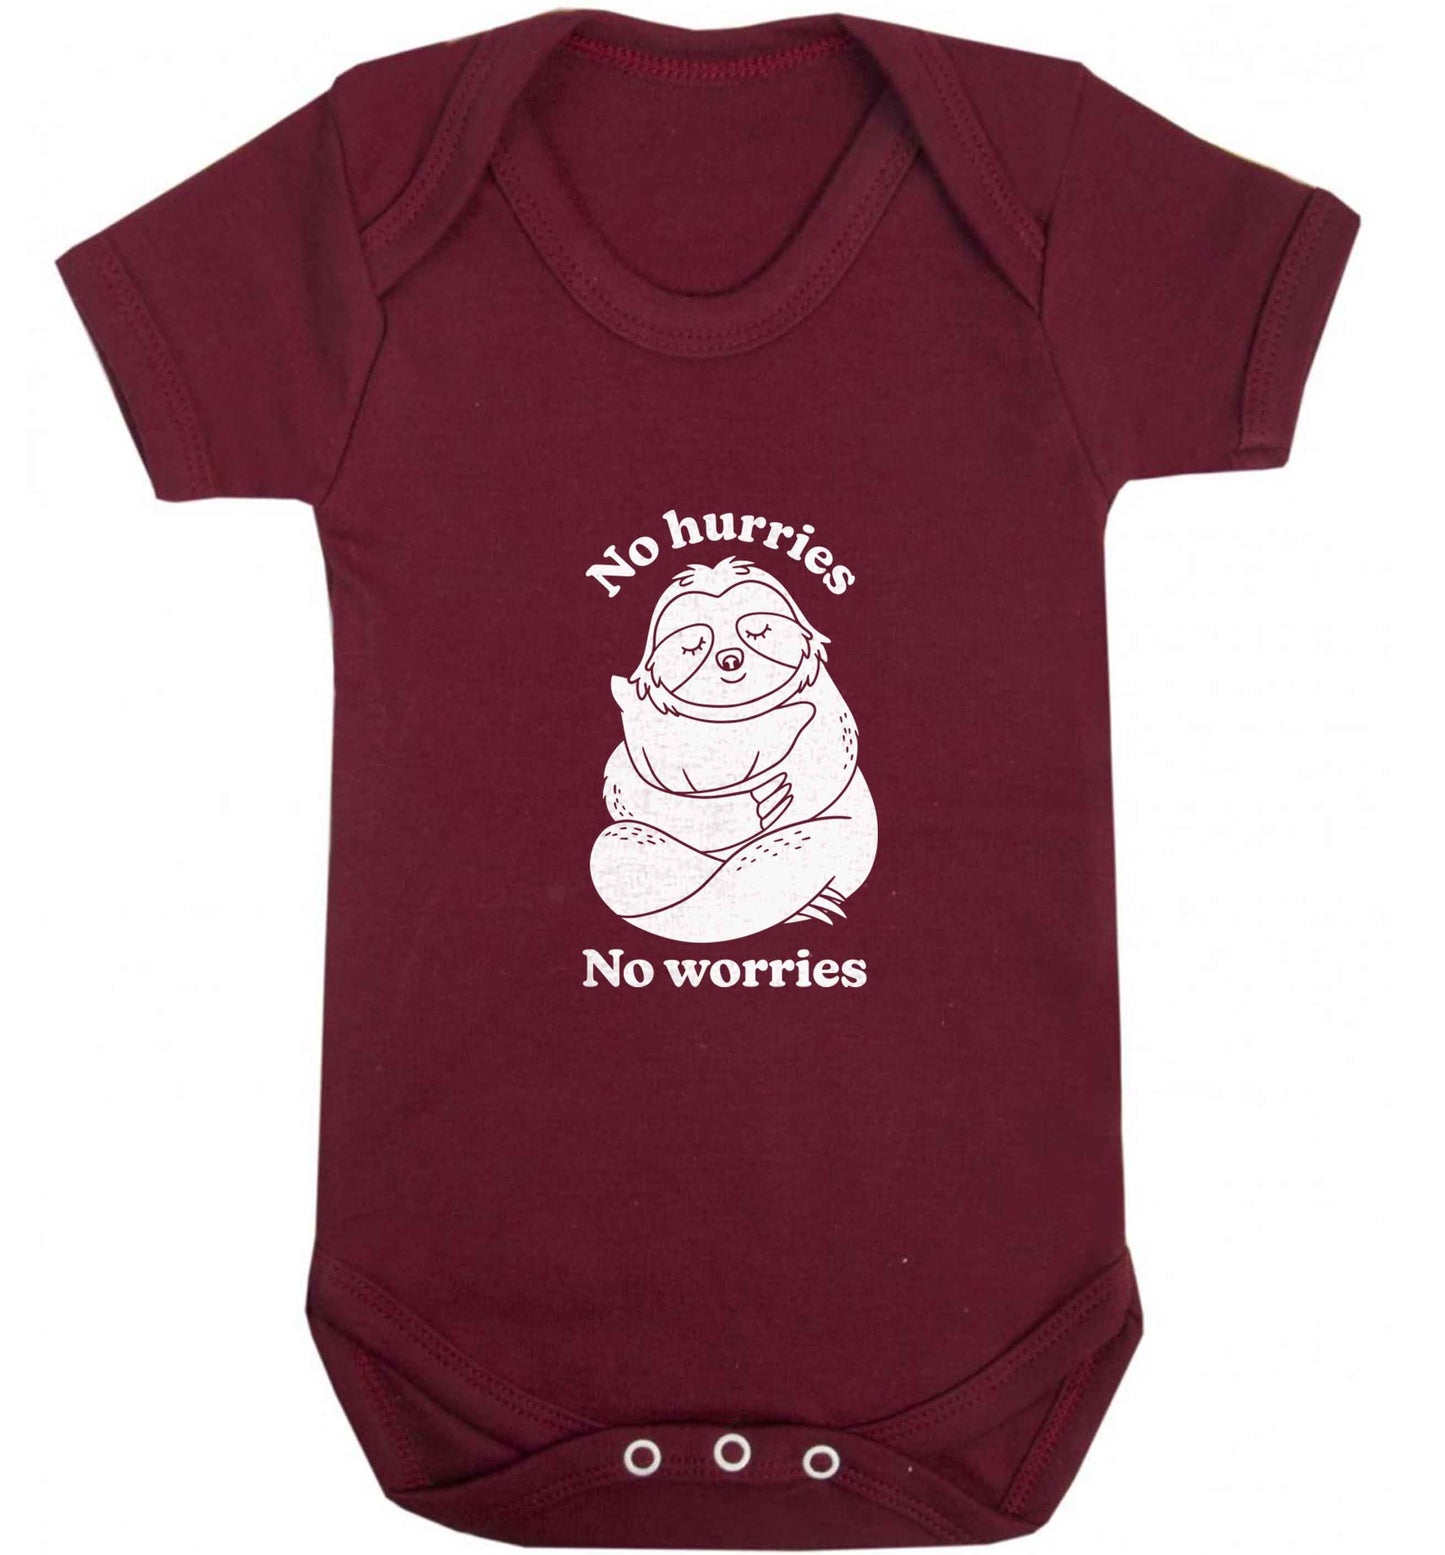 No hurries no worries baby vest maroon 18-24 months